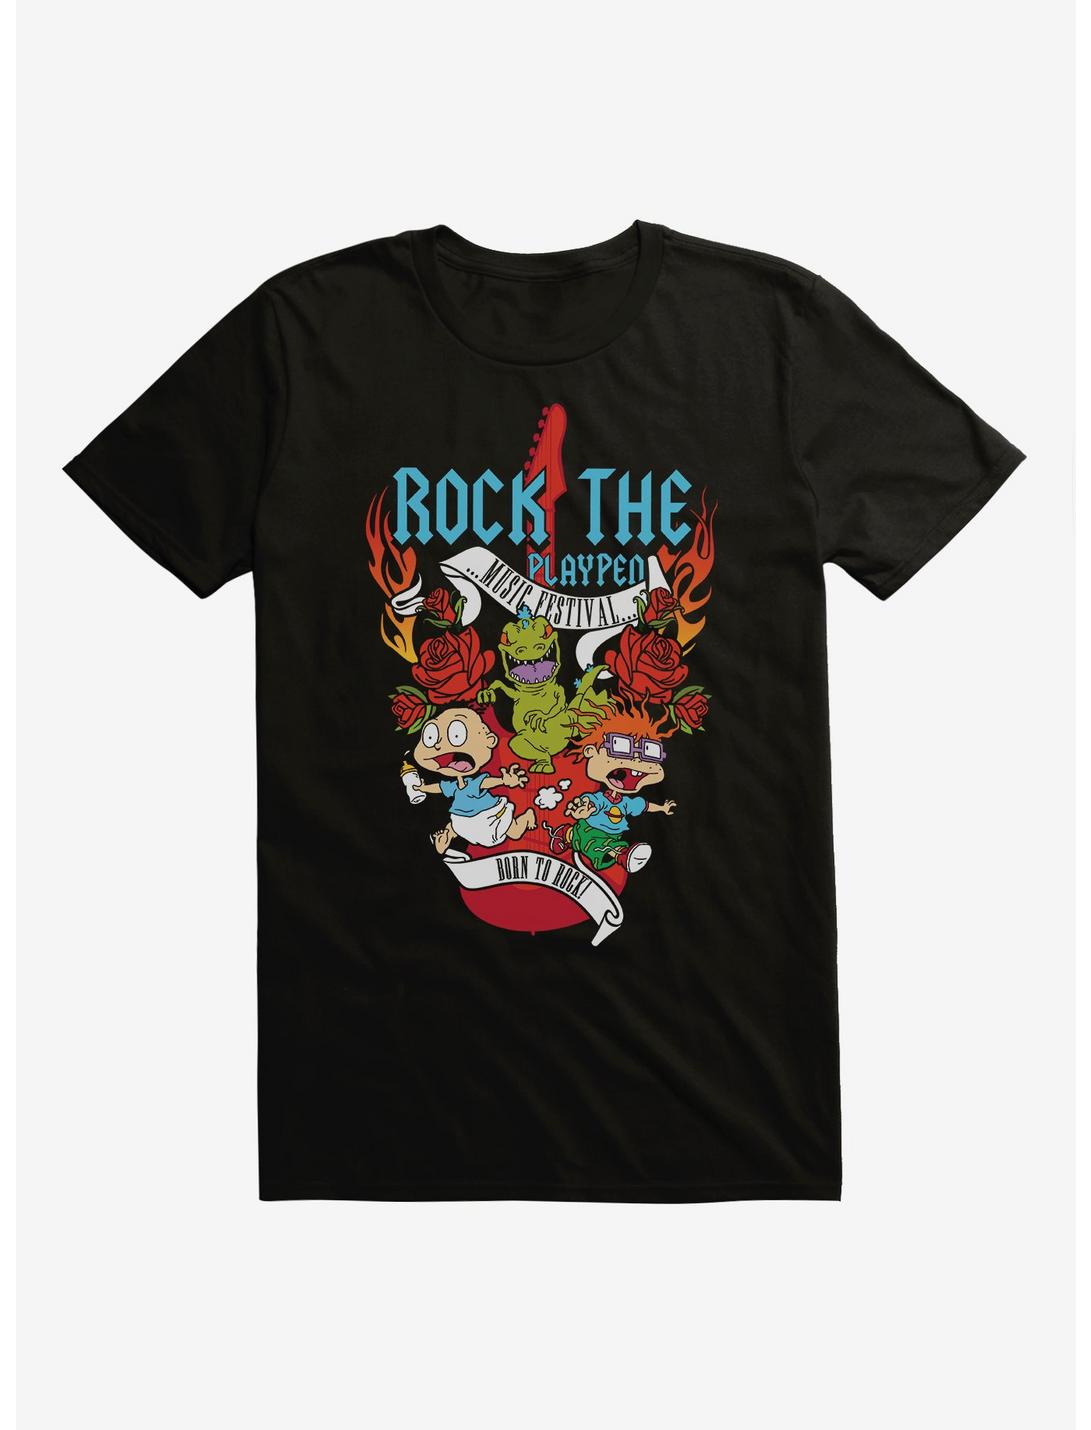 Rugrats Rock the Play Pen T-Shirt, BLACK, hi-res